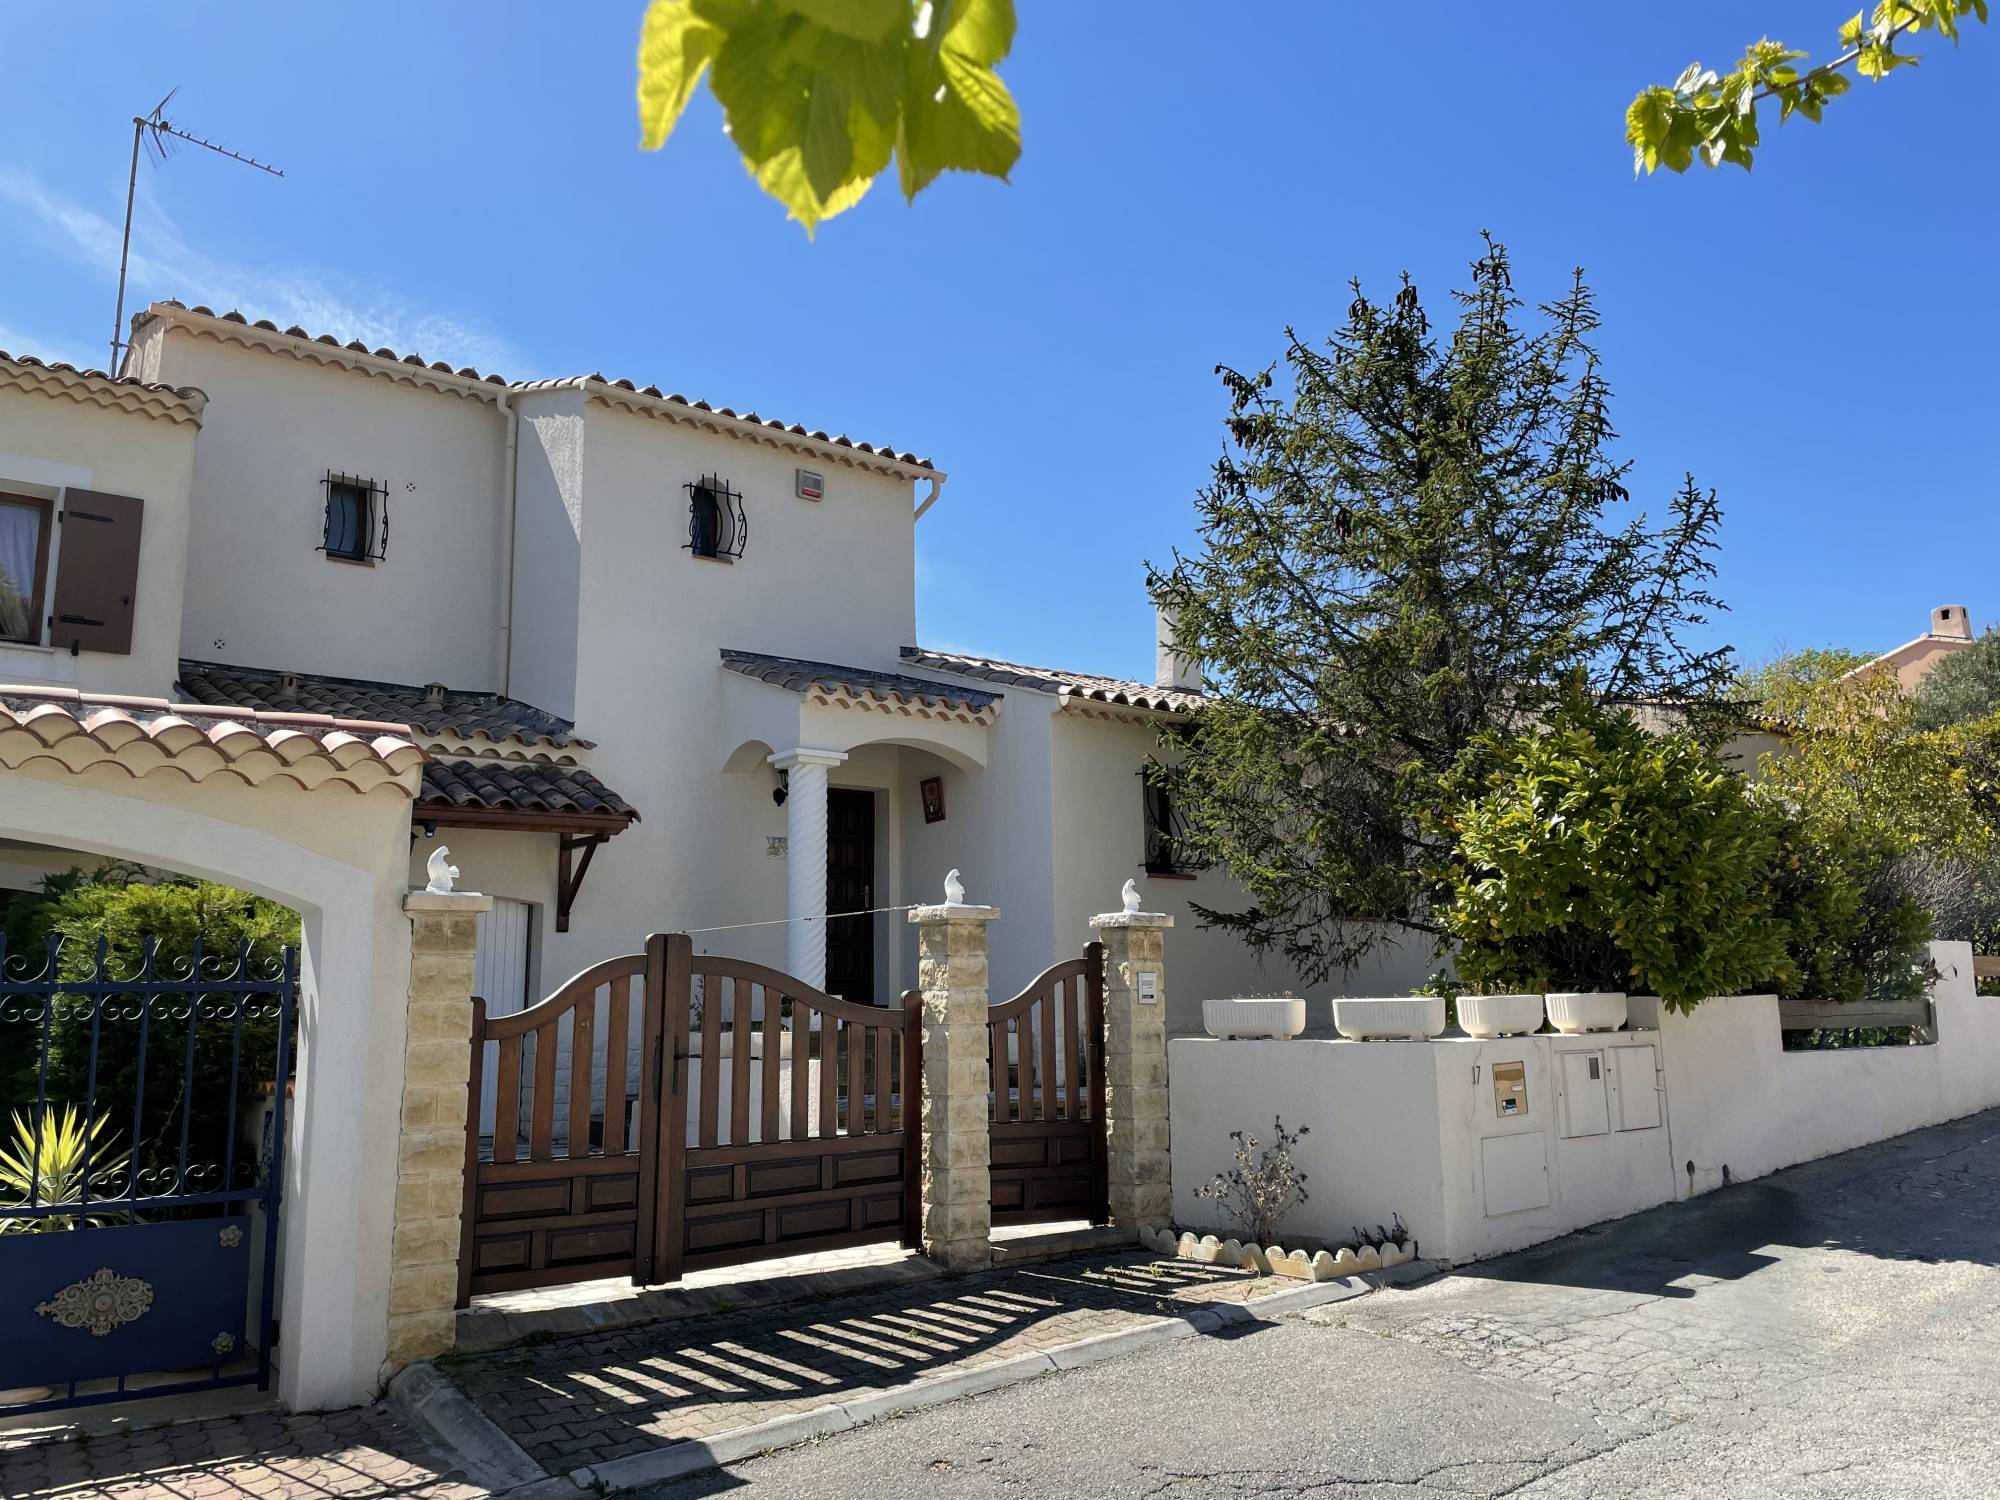 A vendre villa dans lotissement maison en R+1 de 116 m² sur parcelle de 359 m² avec 3 chambres 13190 ALLAUCH